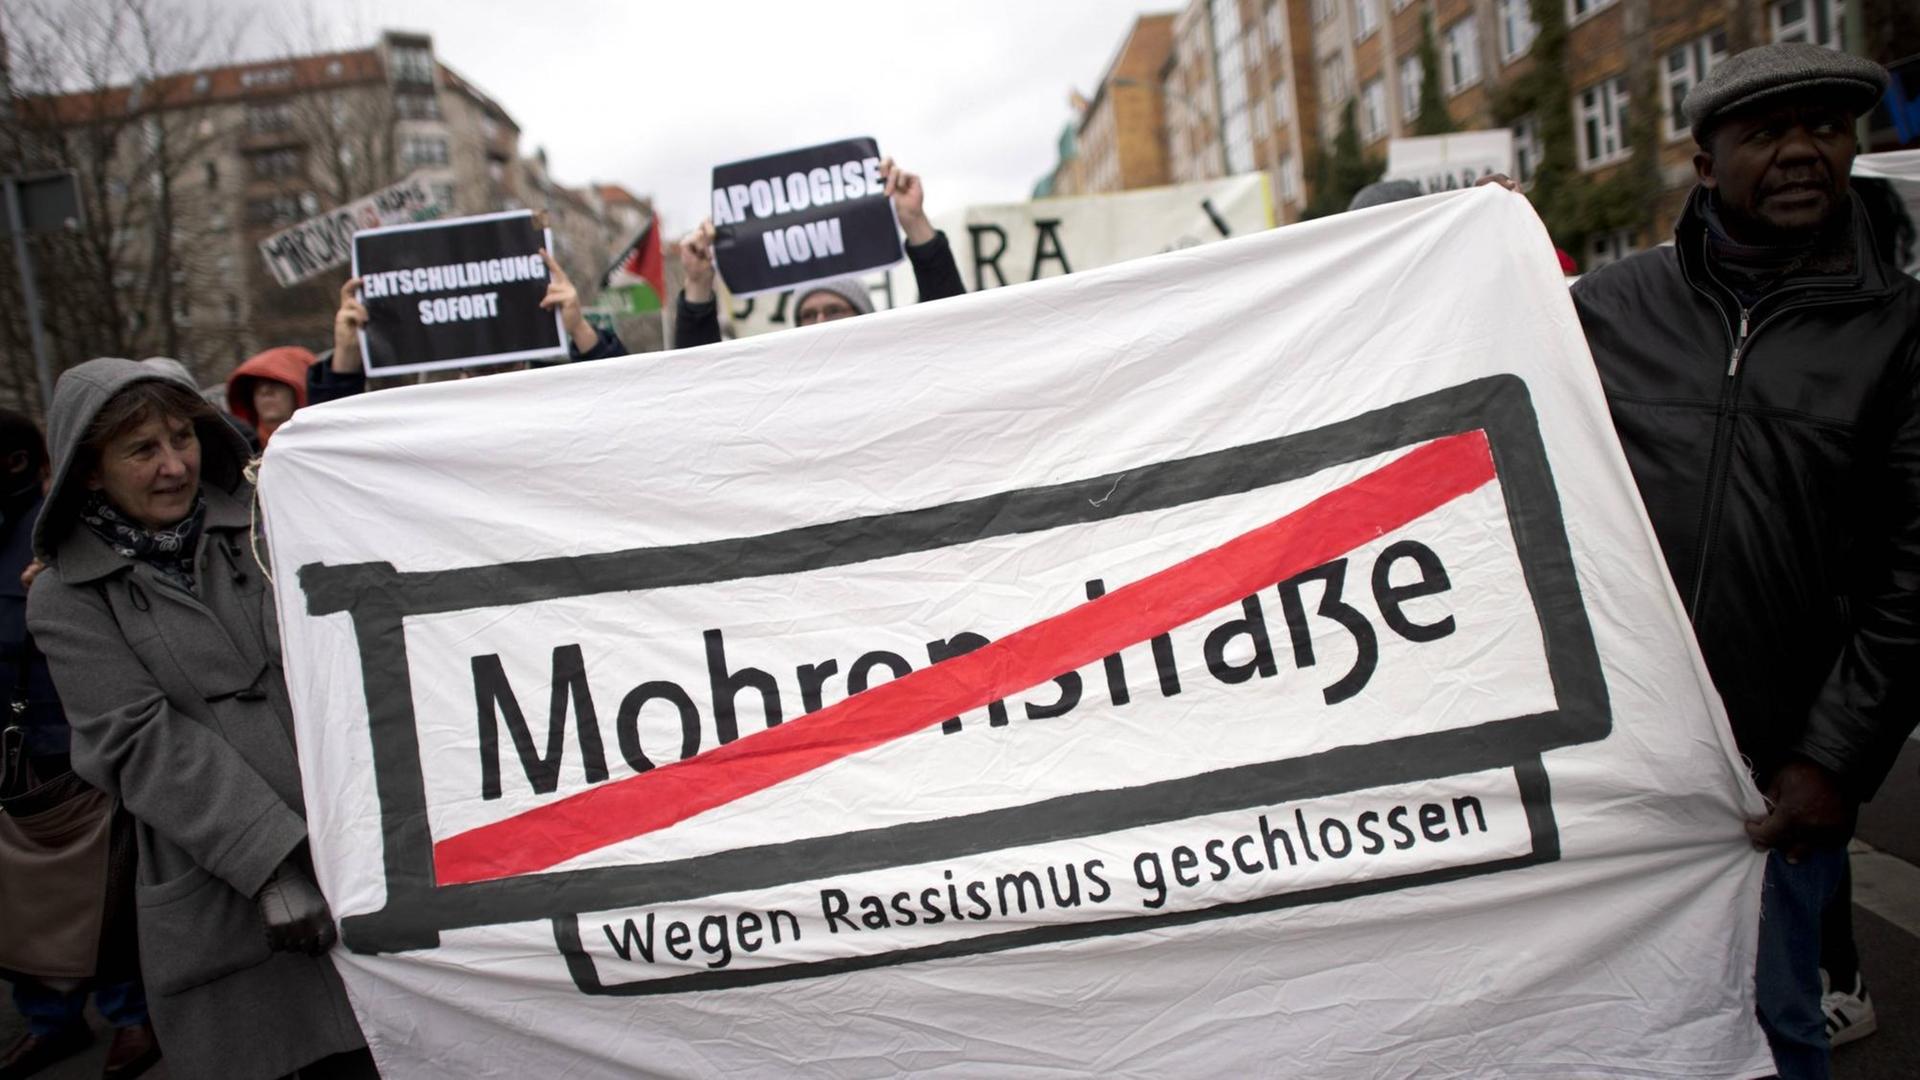 Demonstranten halten ein Transparent mit dem Straßenschild "Mohrenstraße", das rot durchgestrichen wurde.